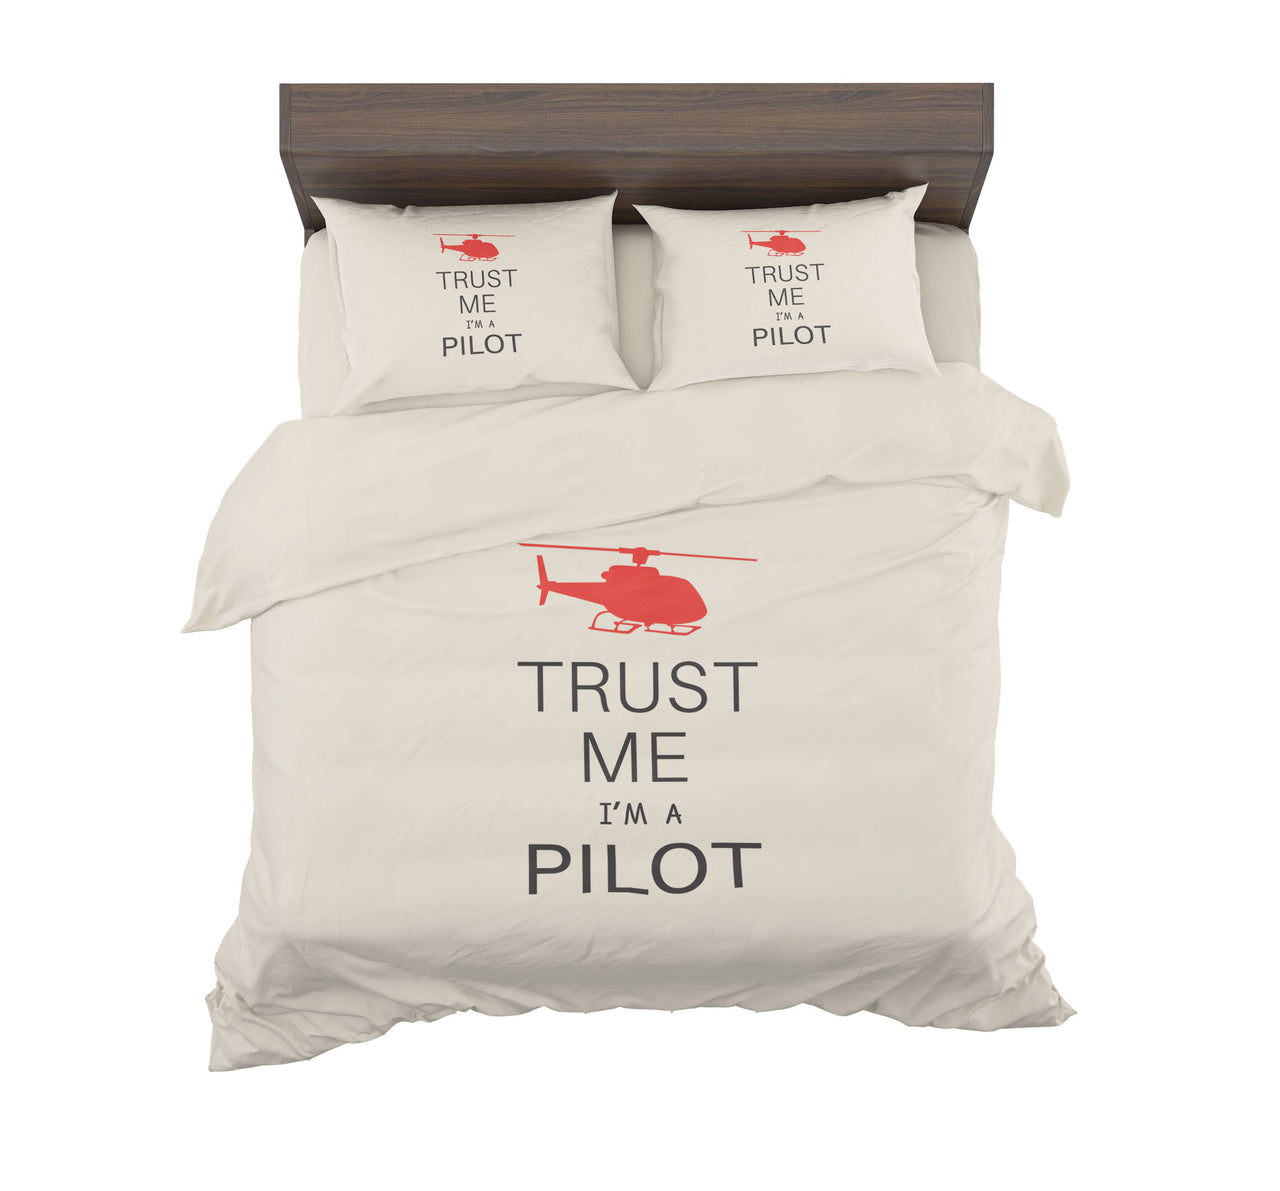 Trust Me I'm a Pilot (Helicopter) Designed Bedding Sets